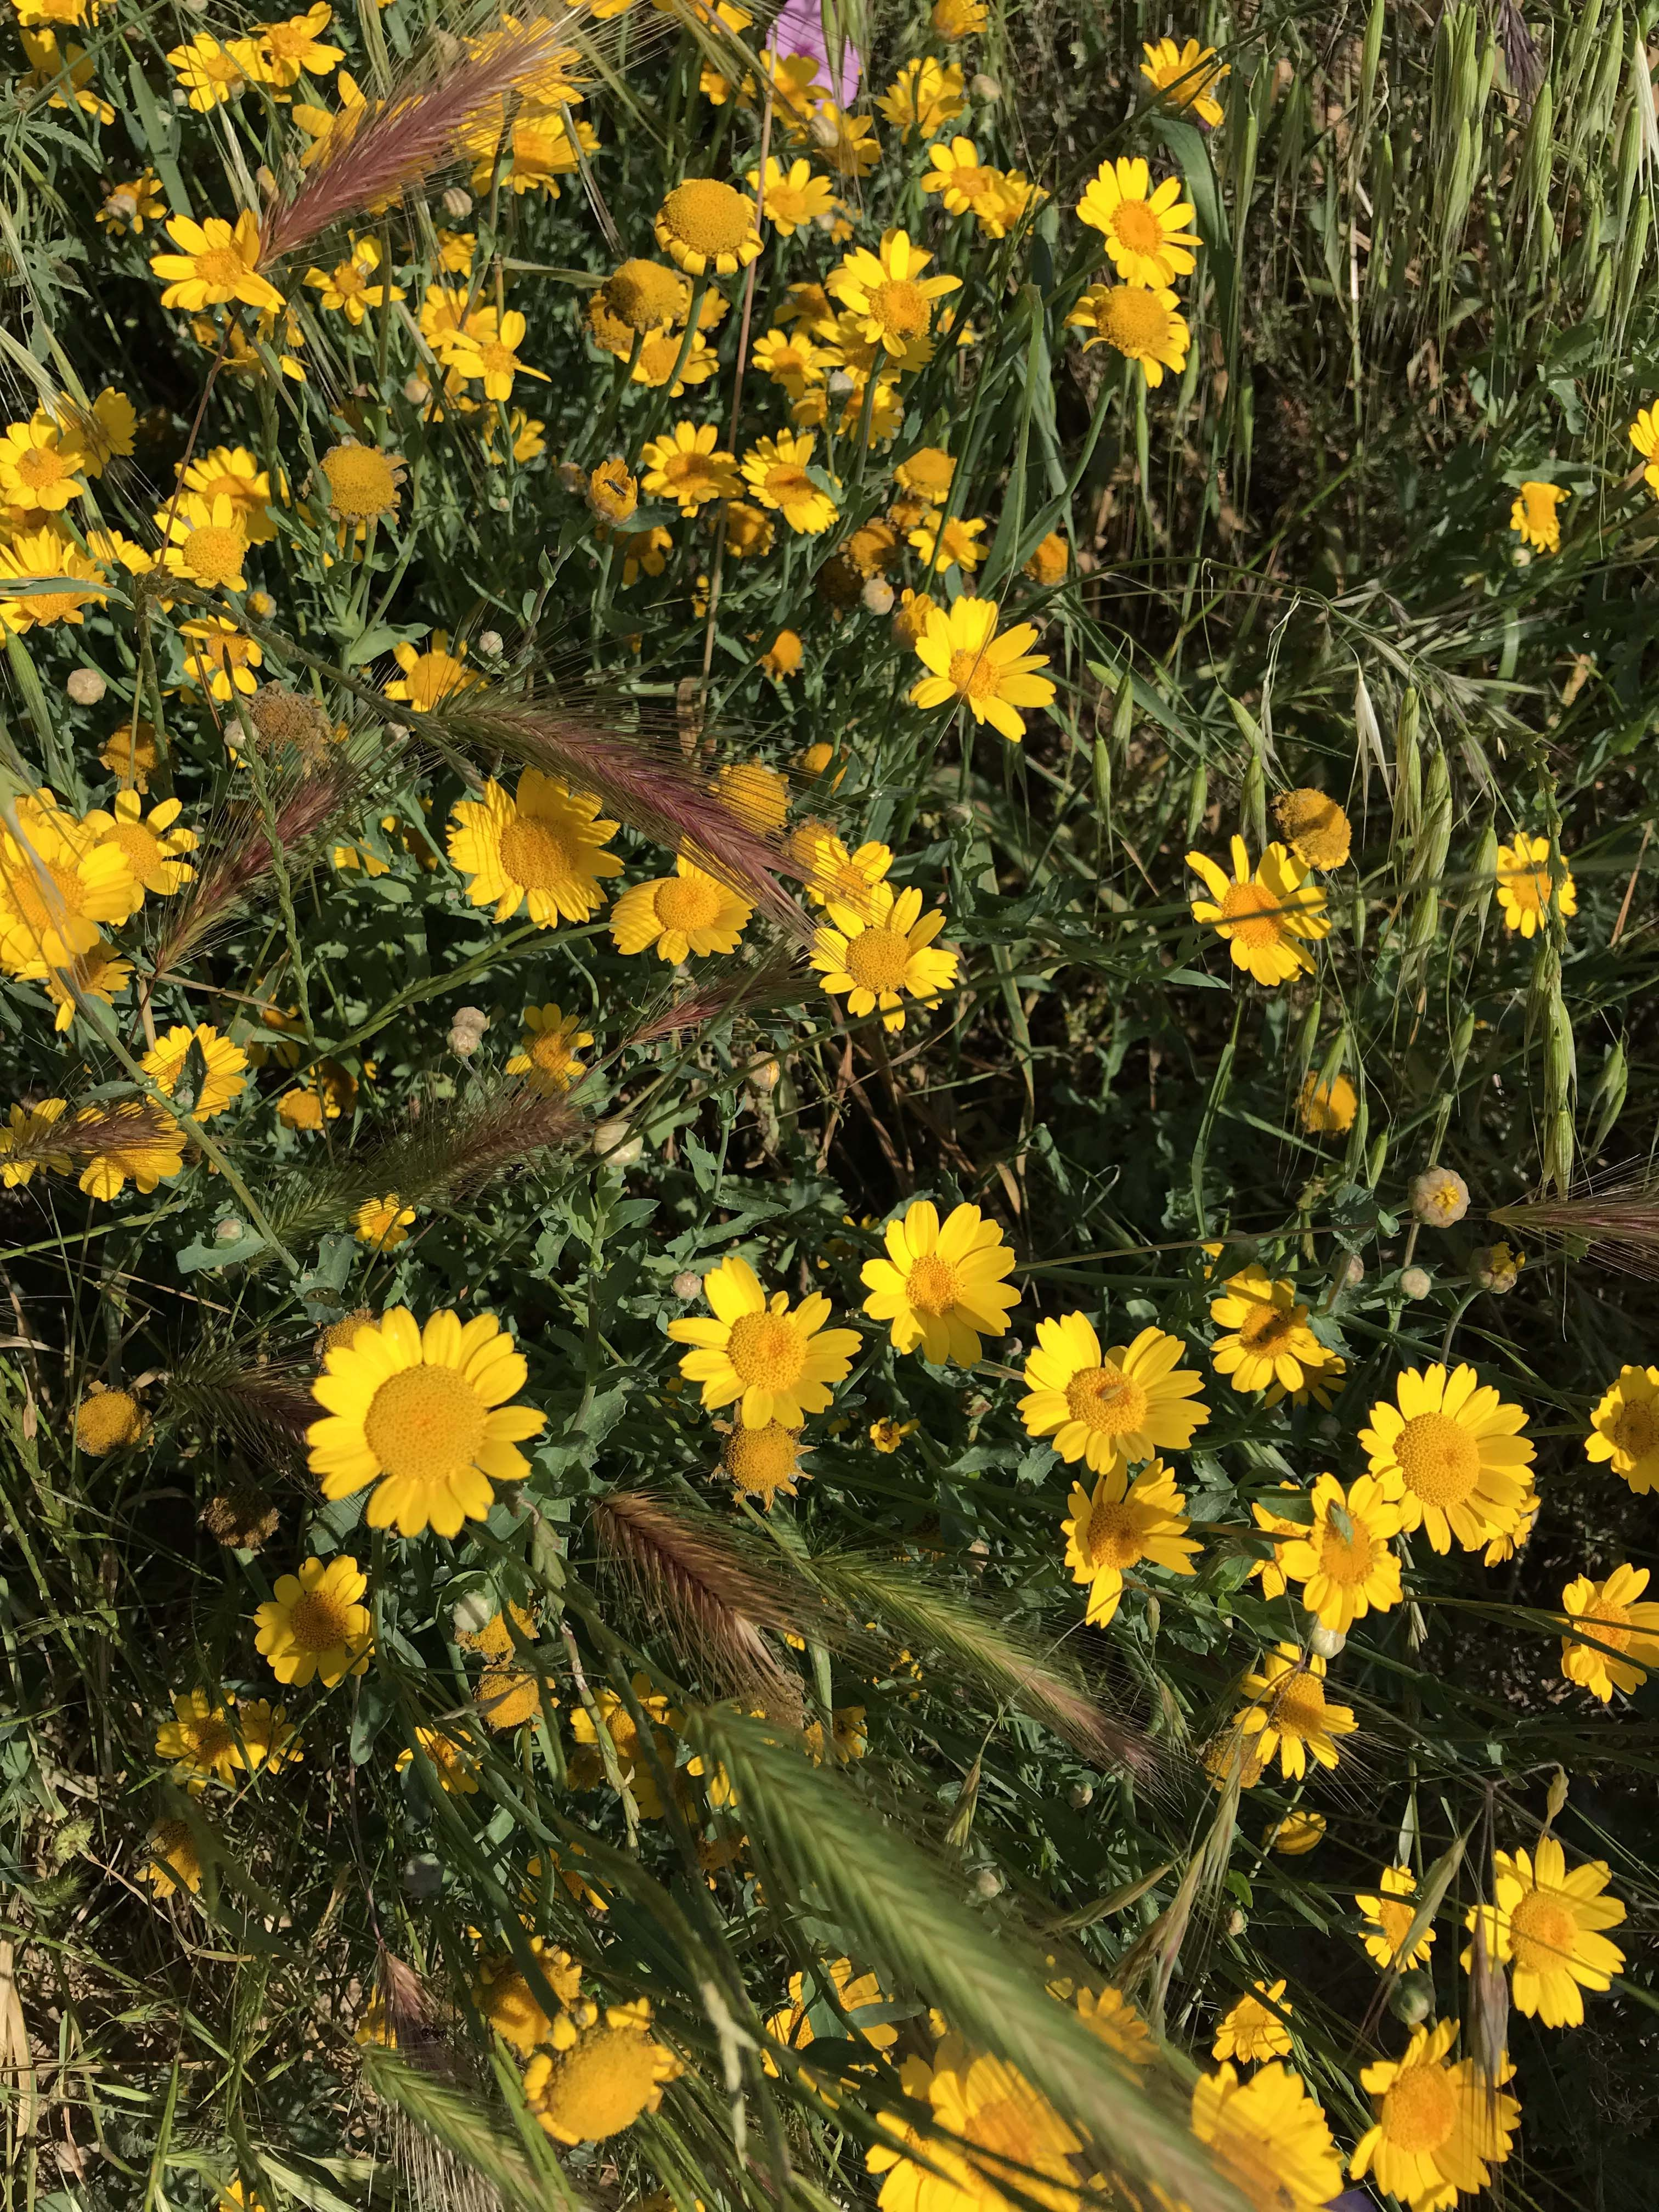 Coronaria-Chrysanthemum-coronarium-3297-3.jpg